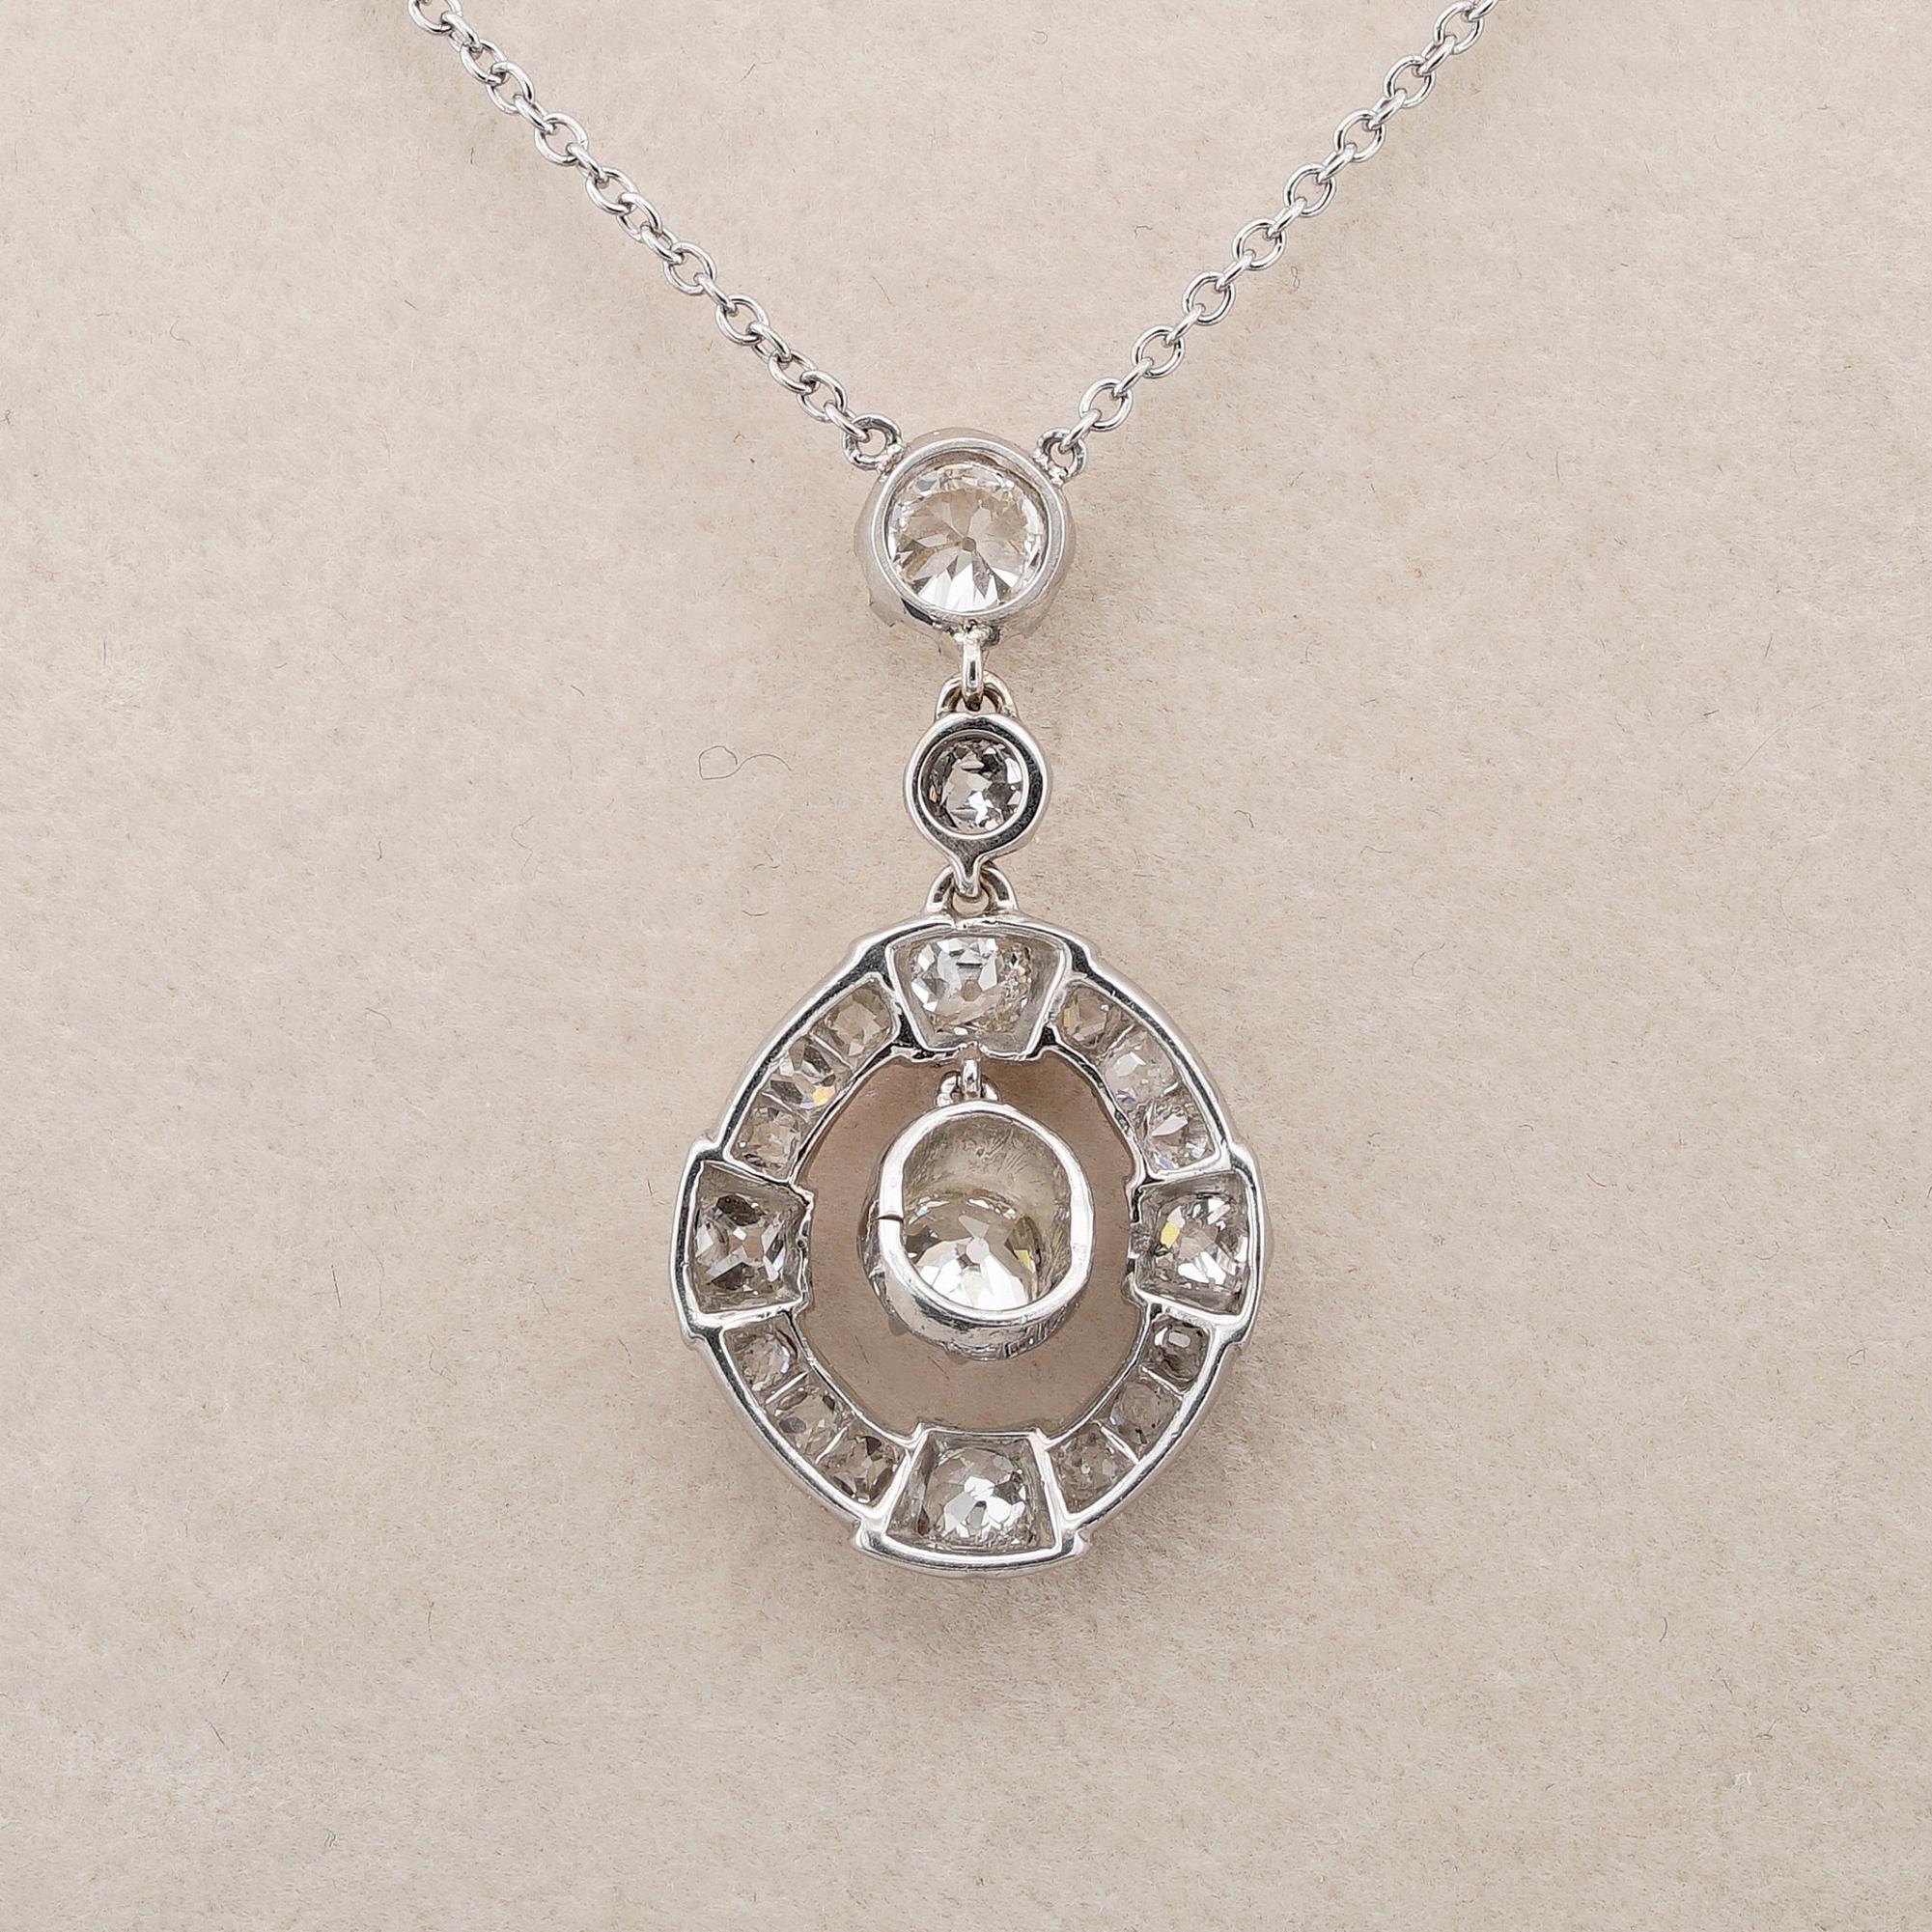 Edardian 1.80 Ct Old Mine Cut Diamond Pendant Necklace Platinum For Sale 2